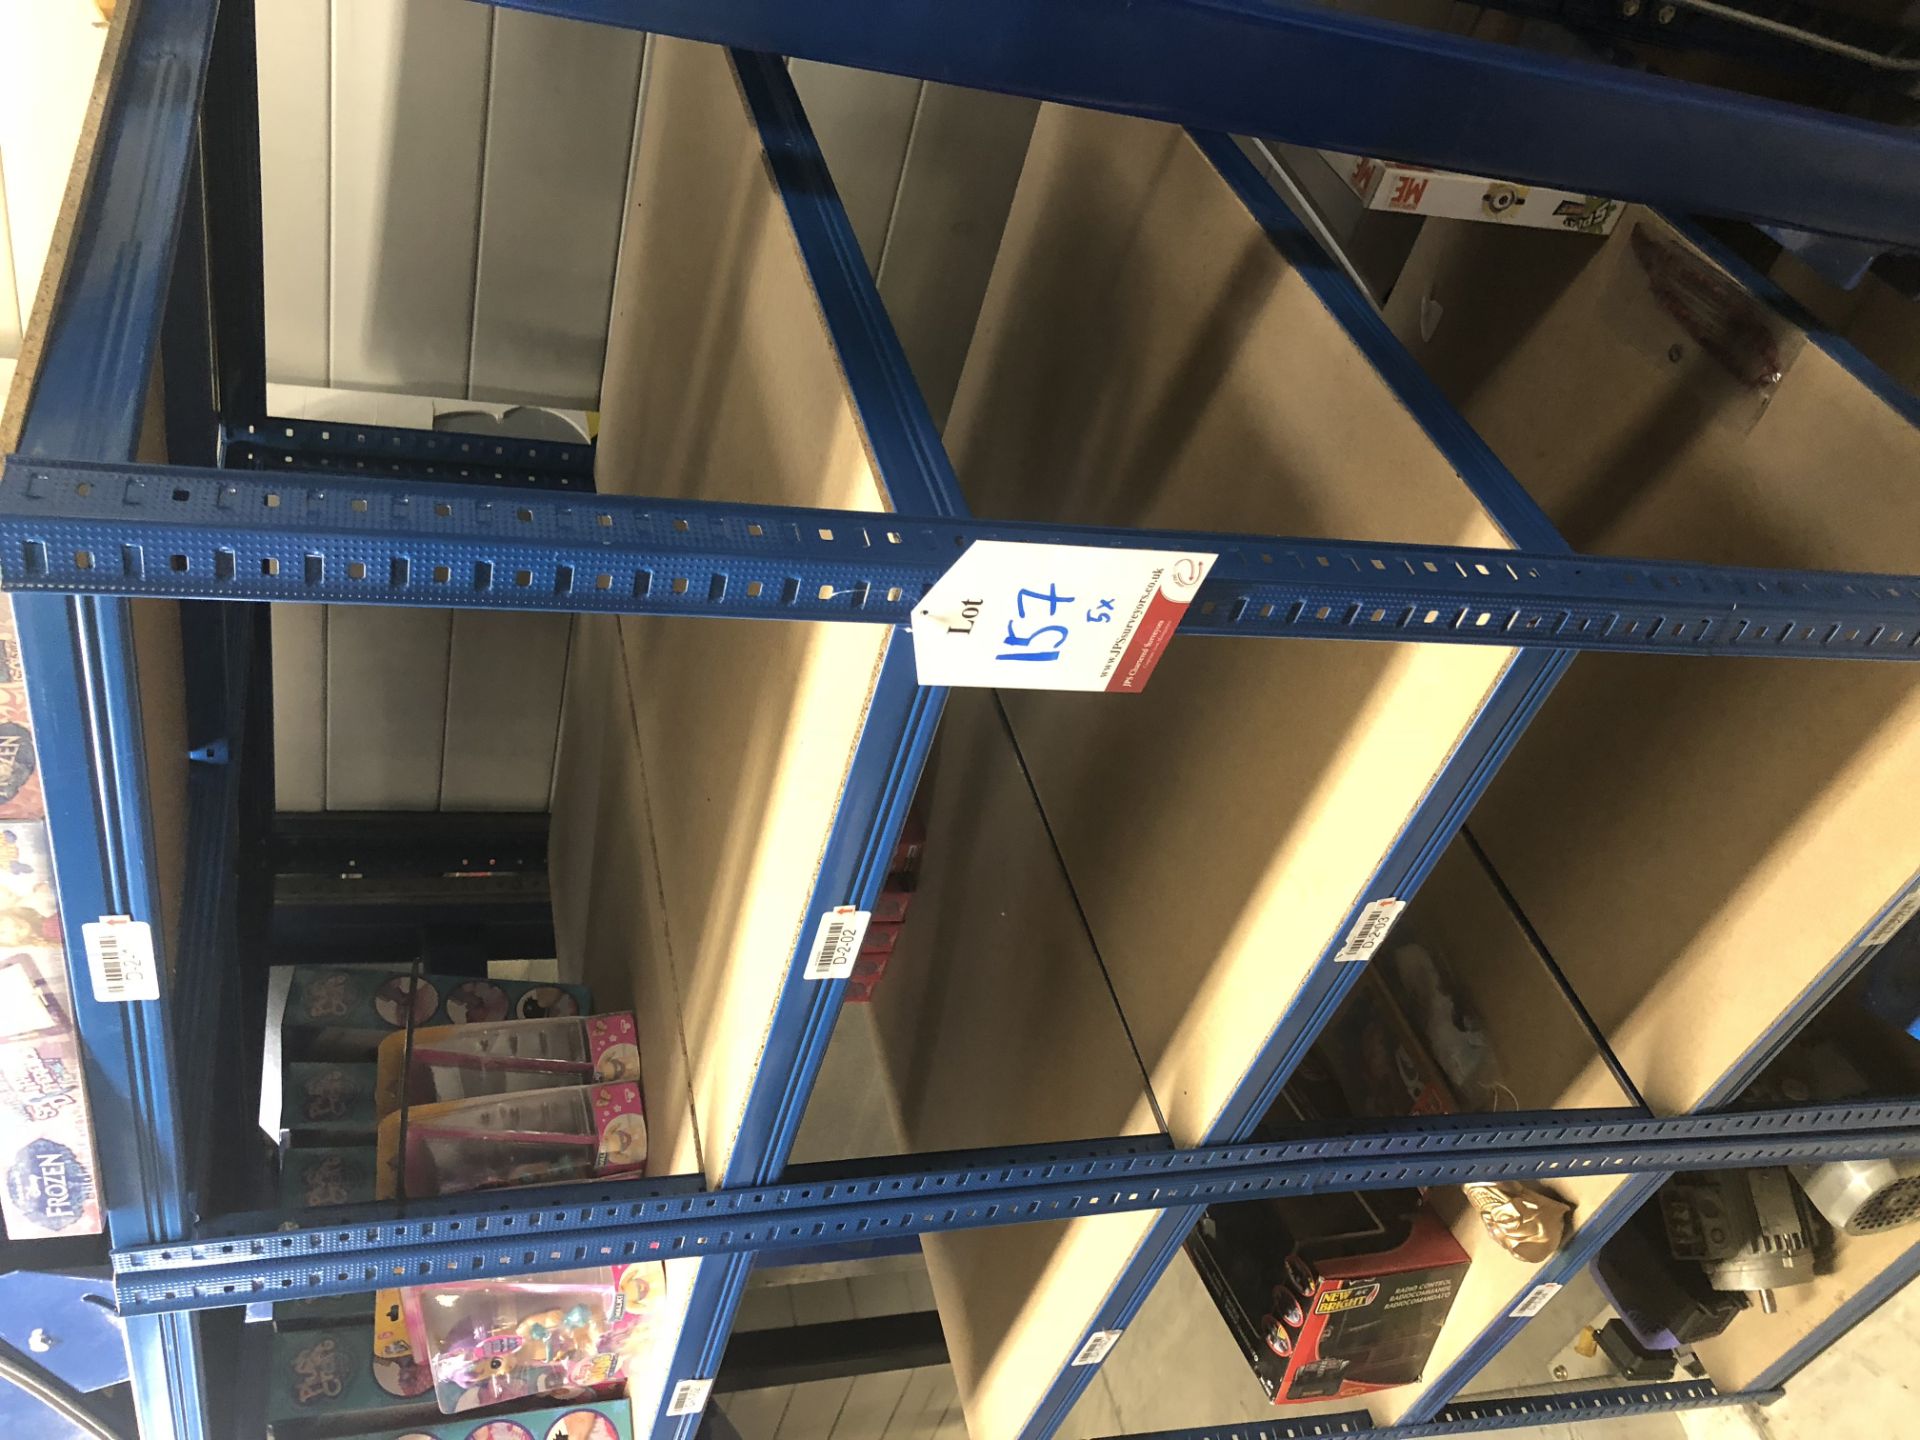 5 x 5 tier metal adjustable rack with chipboard shelves